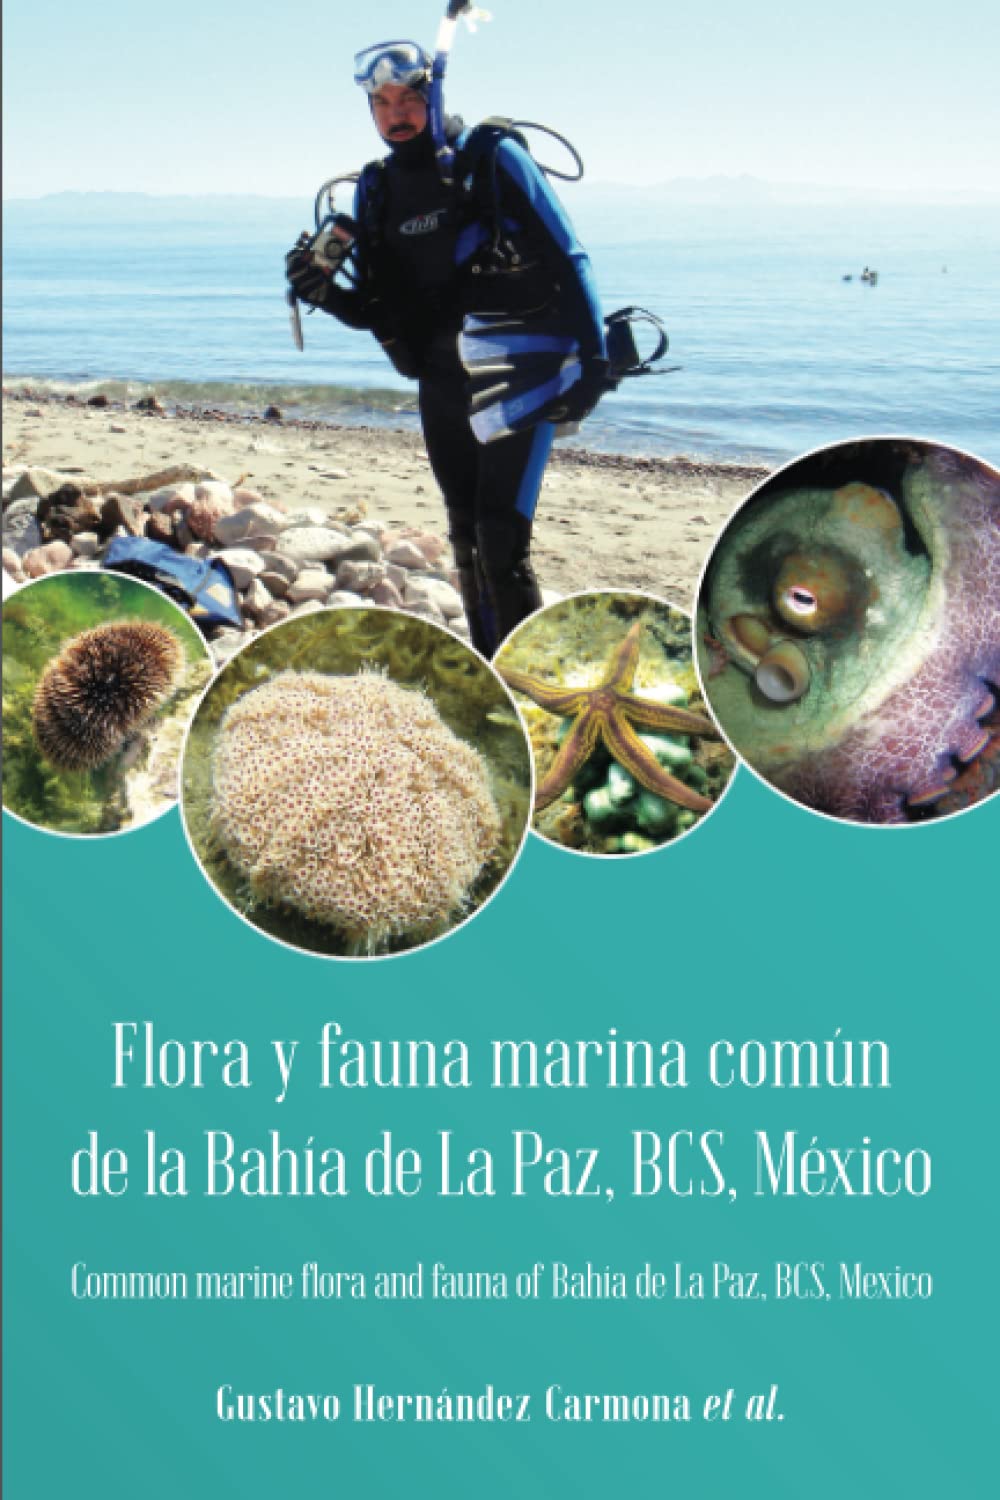 Presentan_libro_de_flora_y_fauna_marina_de_la_Bahía_de_La_Paz.jpg